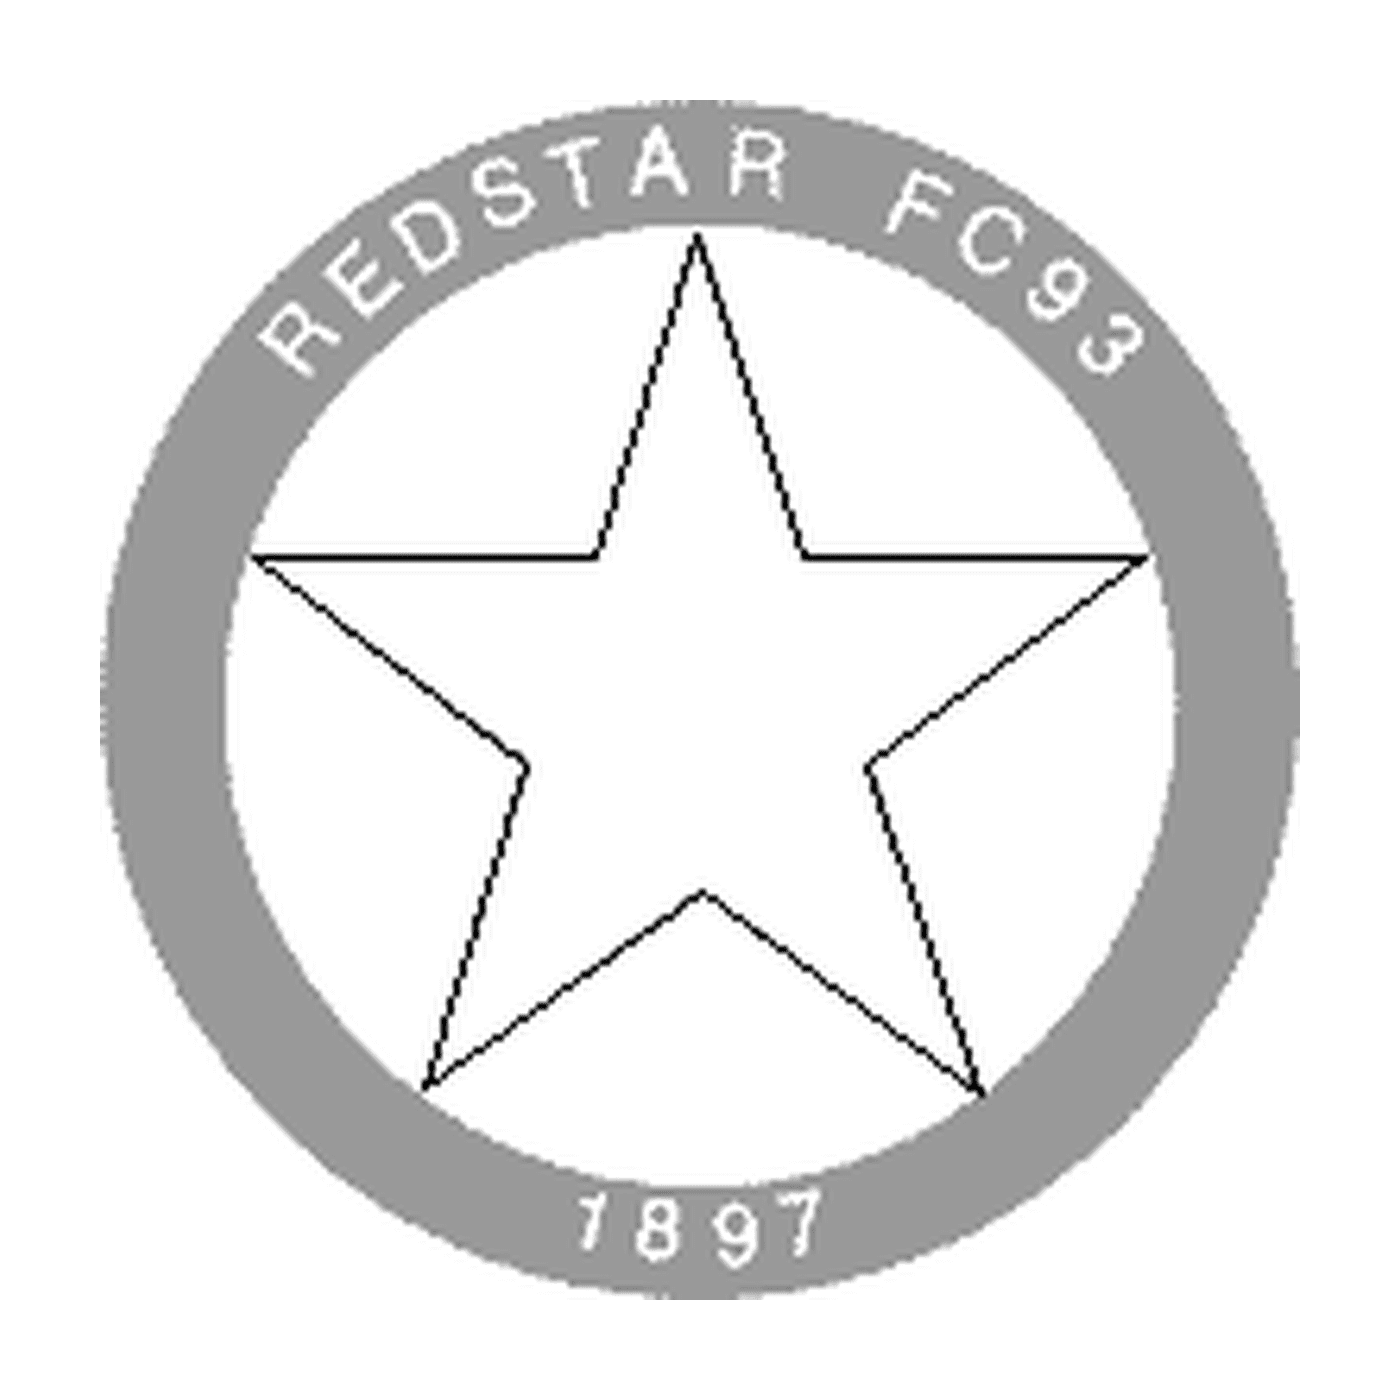  Logotipo de la Estrella Roja FC93 